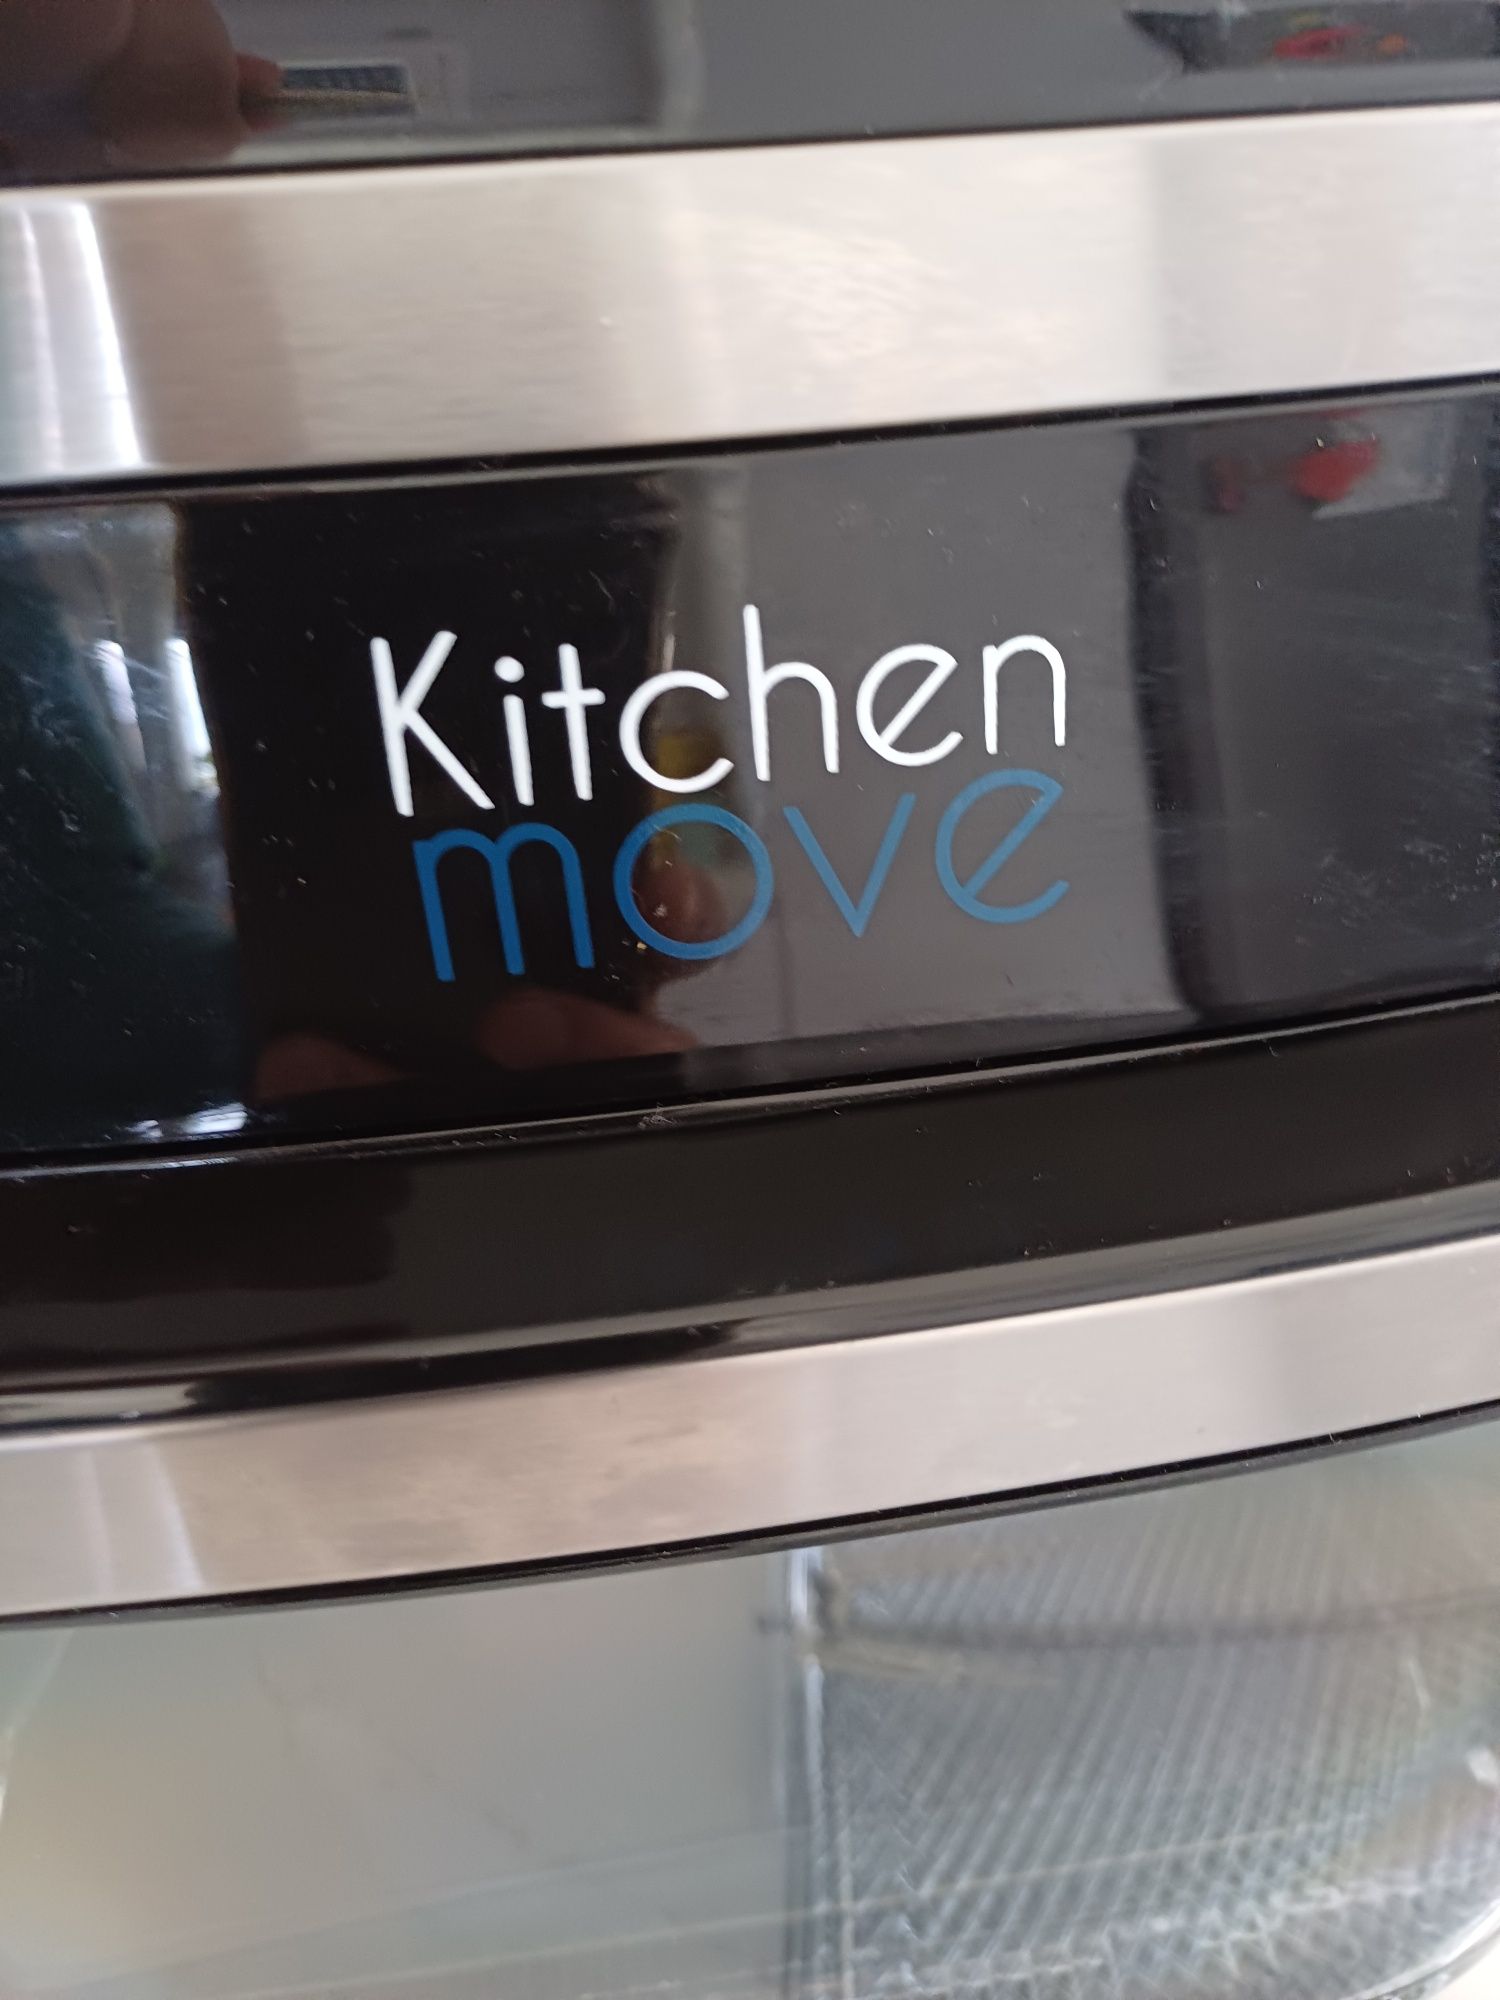 Airfryer kitchen move